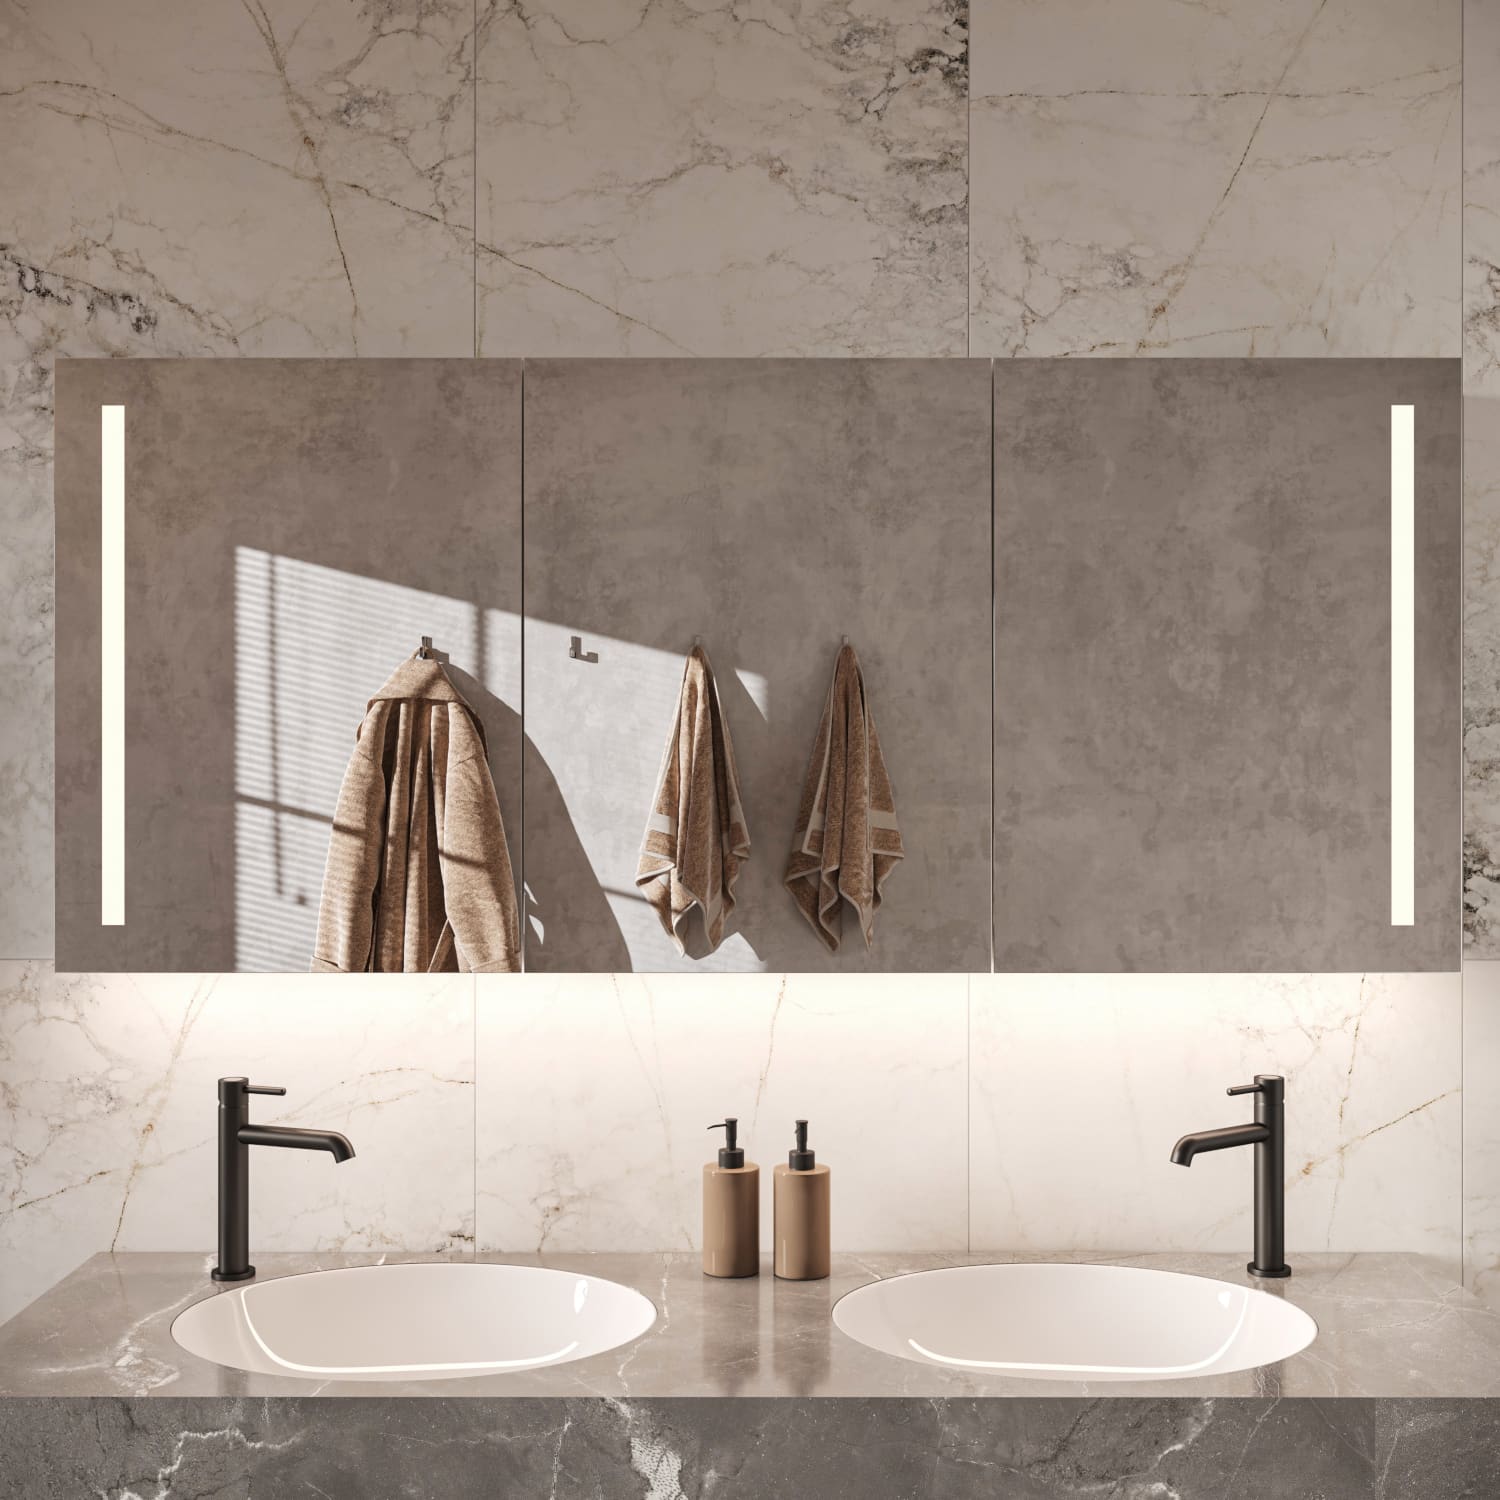 160 cm brede praktische spiegelkast voor in de badkamer, uitgevoerd met geïntegreerde verwarming en verlichting in de deuren en aan de onderzijde van de spiegelkast